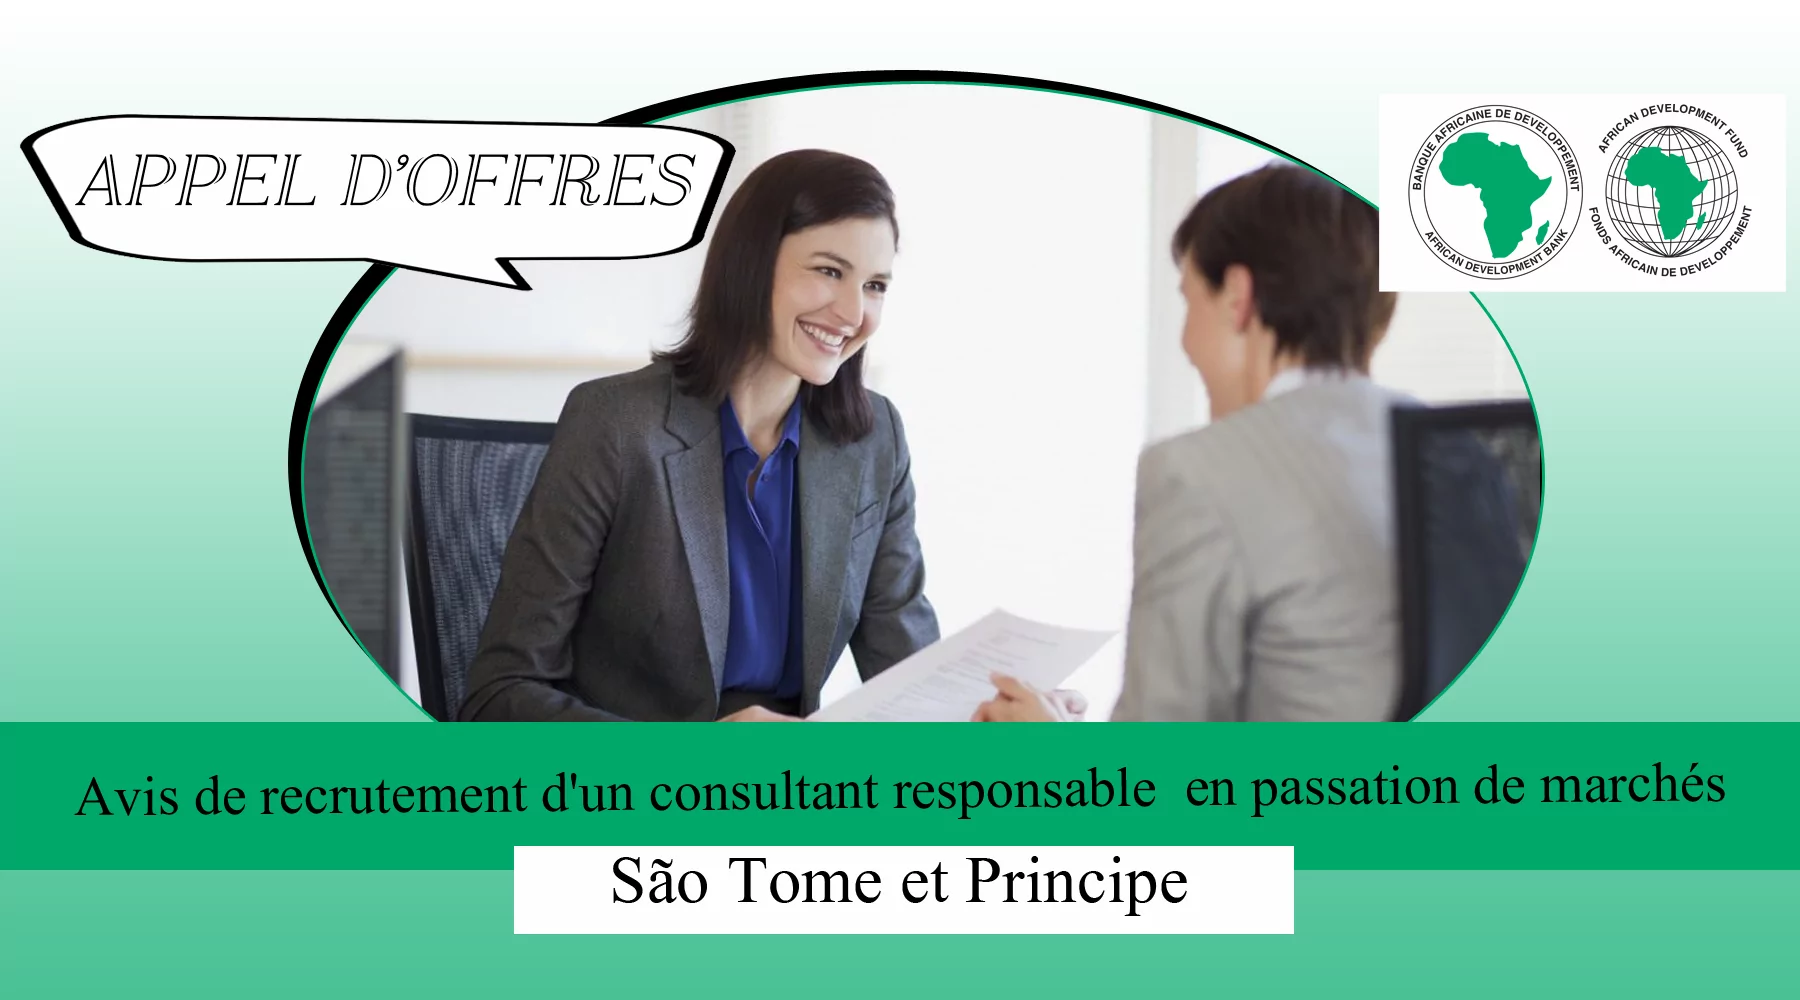 Avis de recrutement d’un consultant responsable en passation de marchés, São Tome et Principe